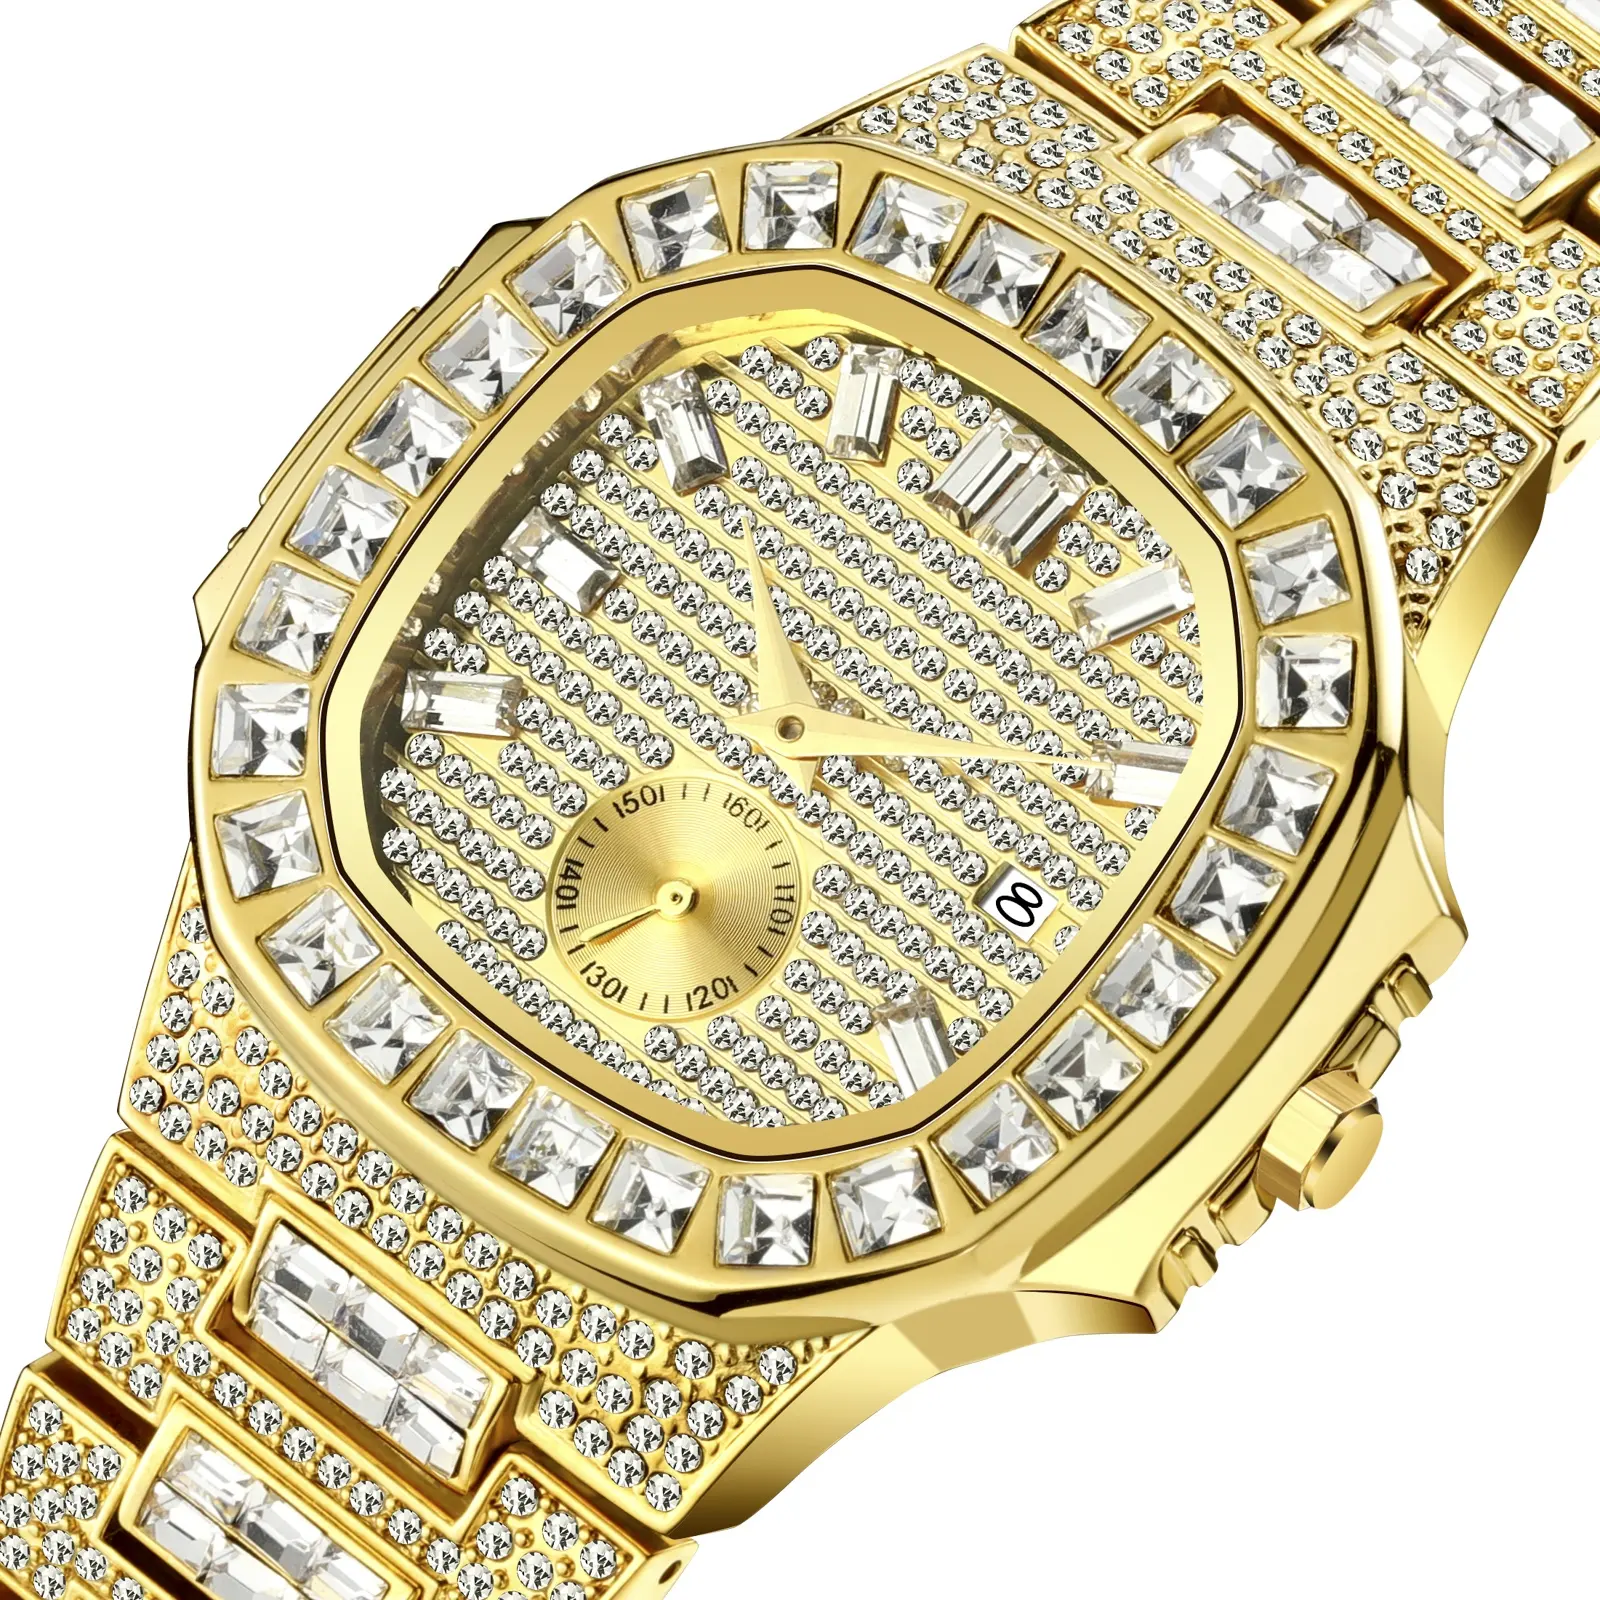 Relógio masculino, hip hop homens relógios marca de luxo da moda relógio de quartzo homens relógio gelado diamante homem relógio de pulso rosa cheio de aço masculino relógio XFCS